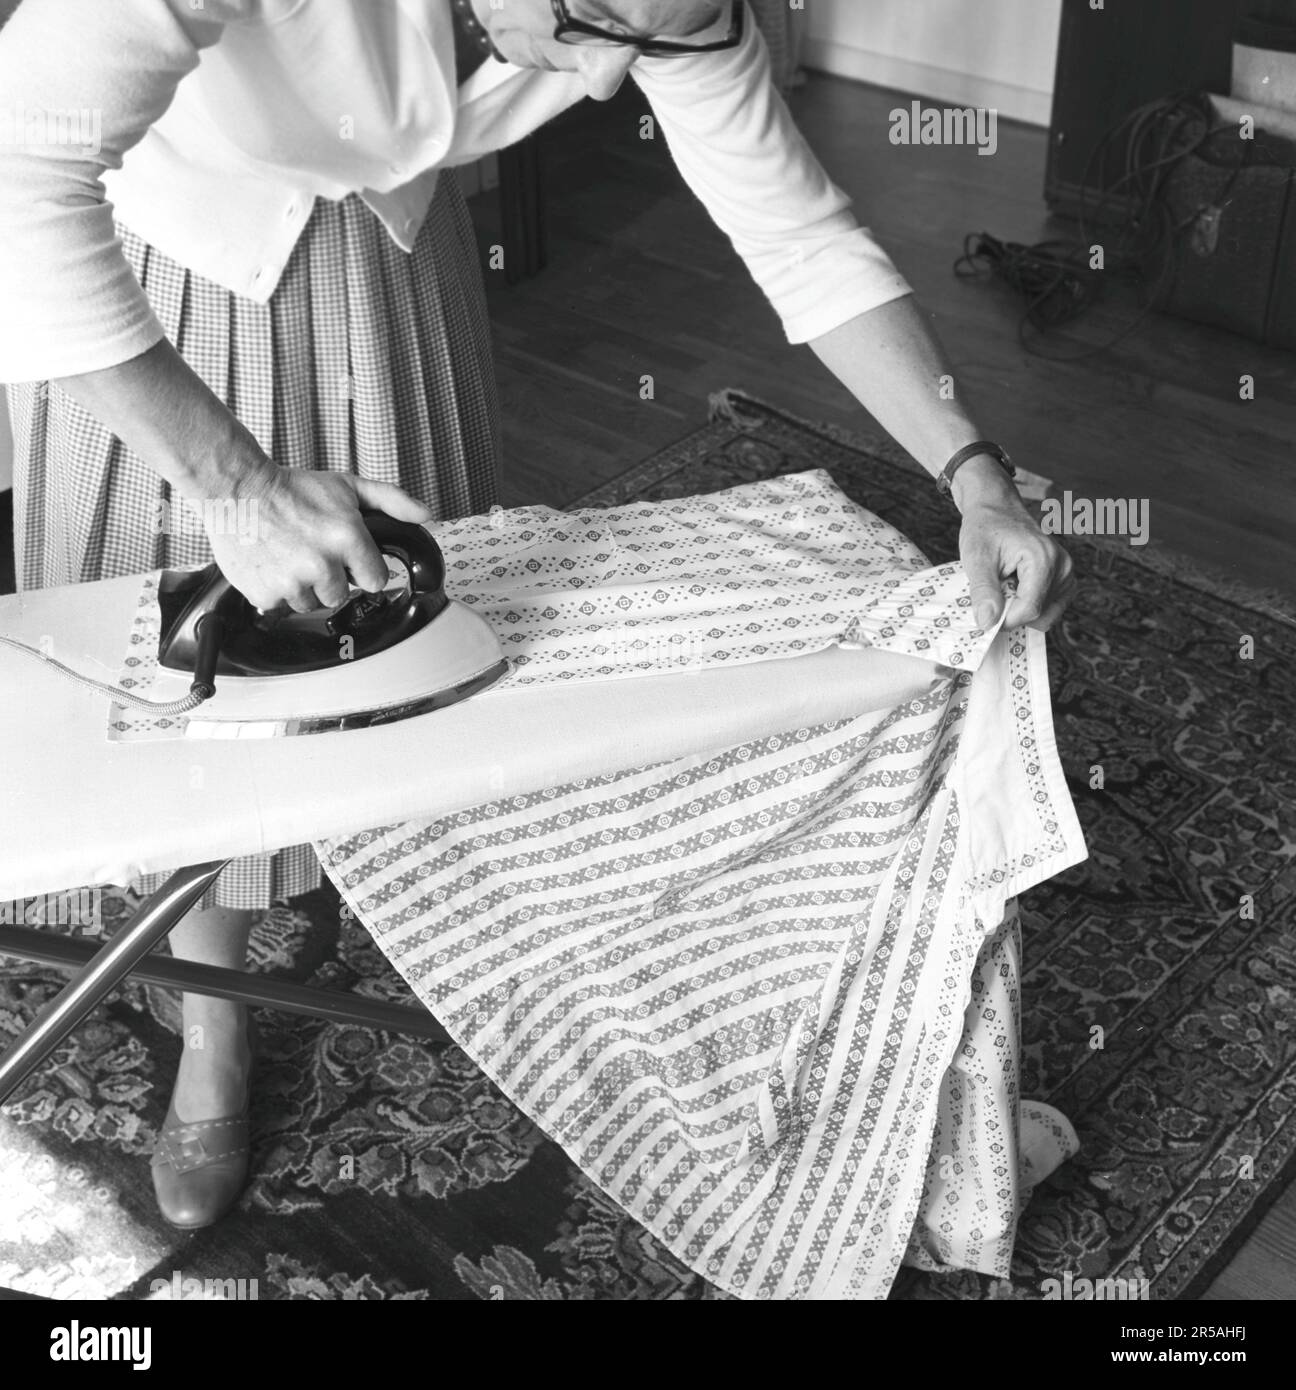 Repassage dans le 1950s. Une femme a vu repasser ses vêtements à la maison. Suède 1957 Banque D'Images